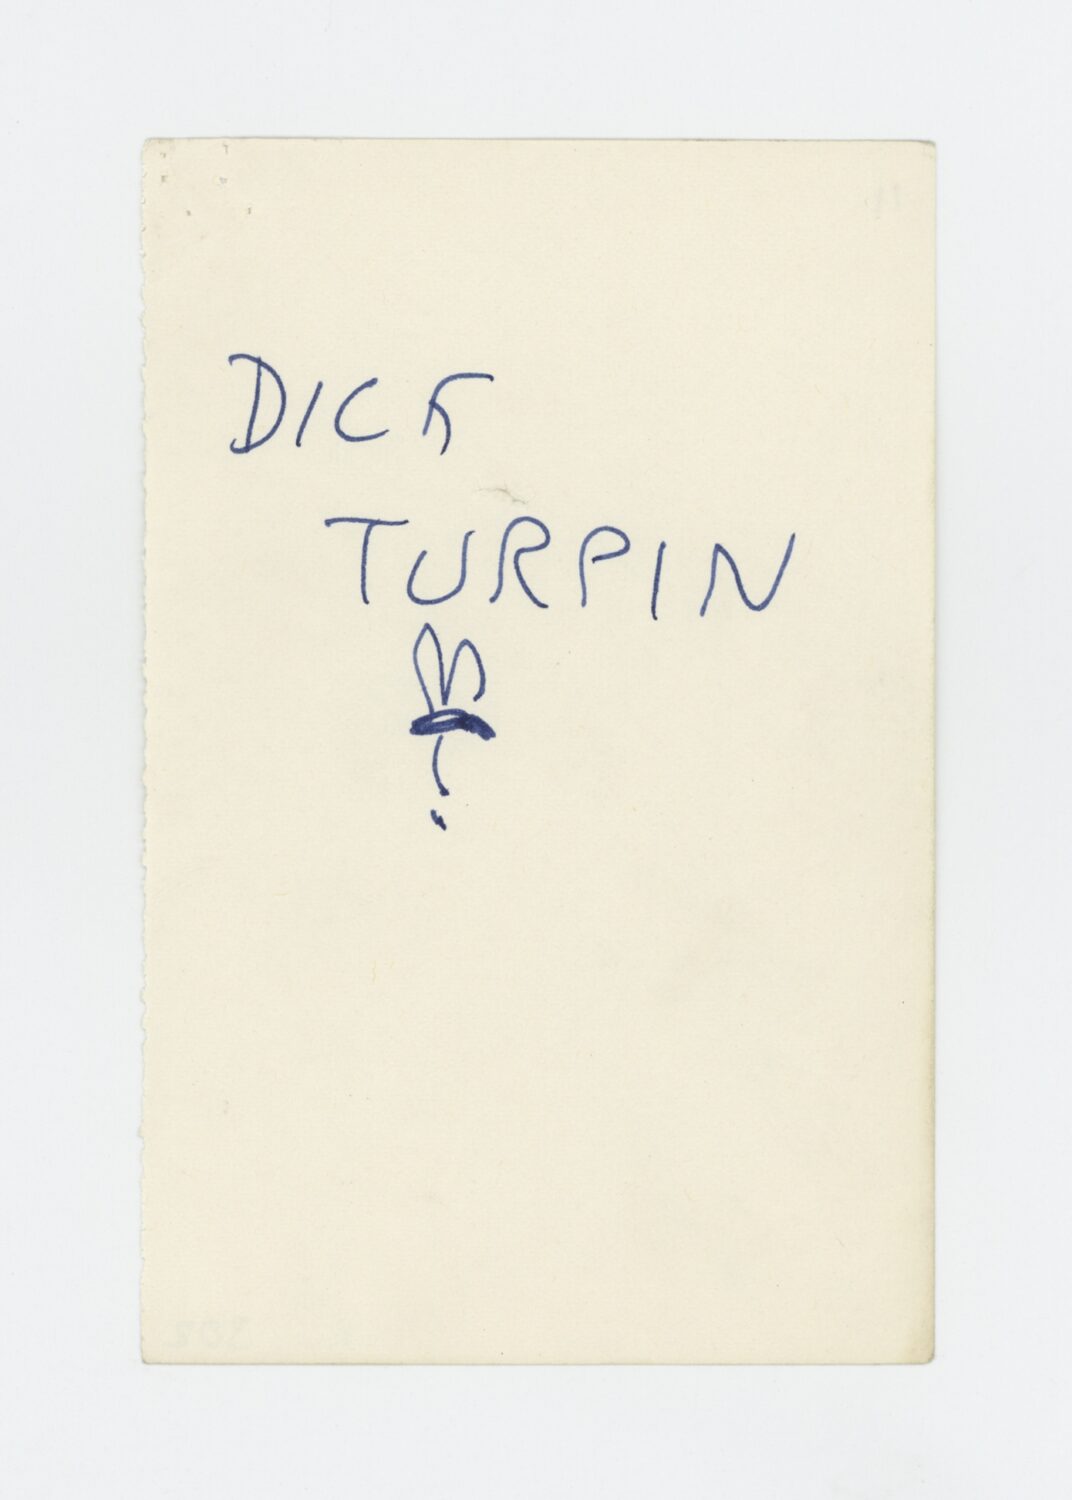 Hare: Dick Turpin